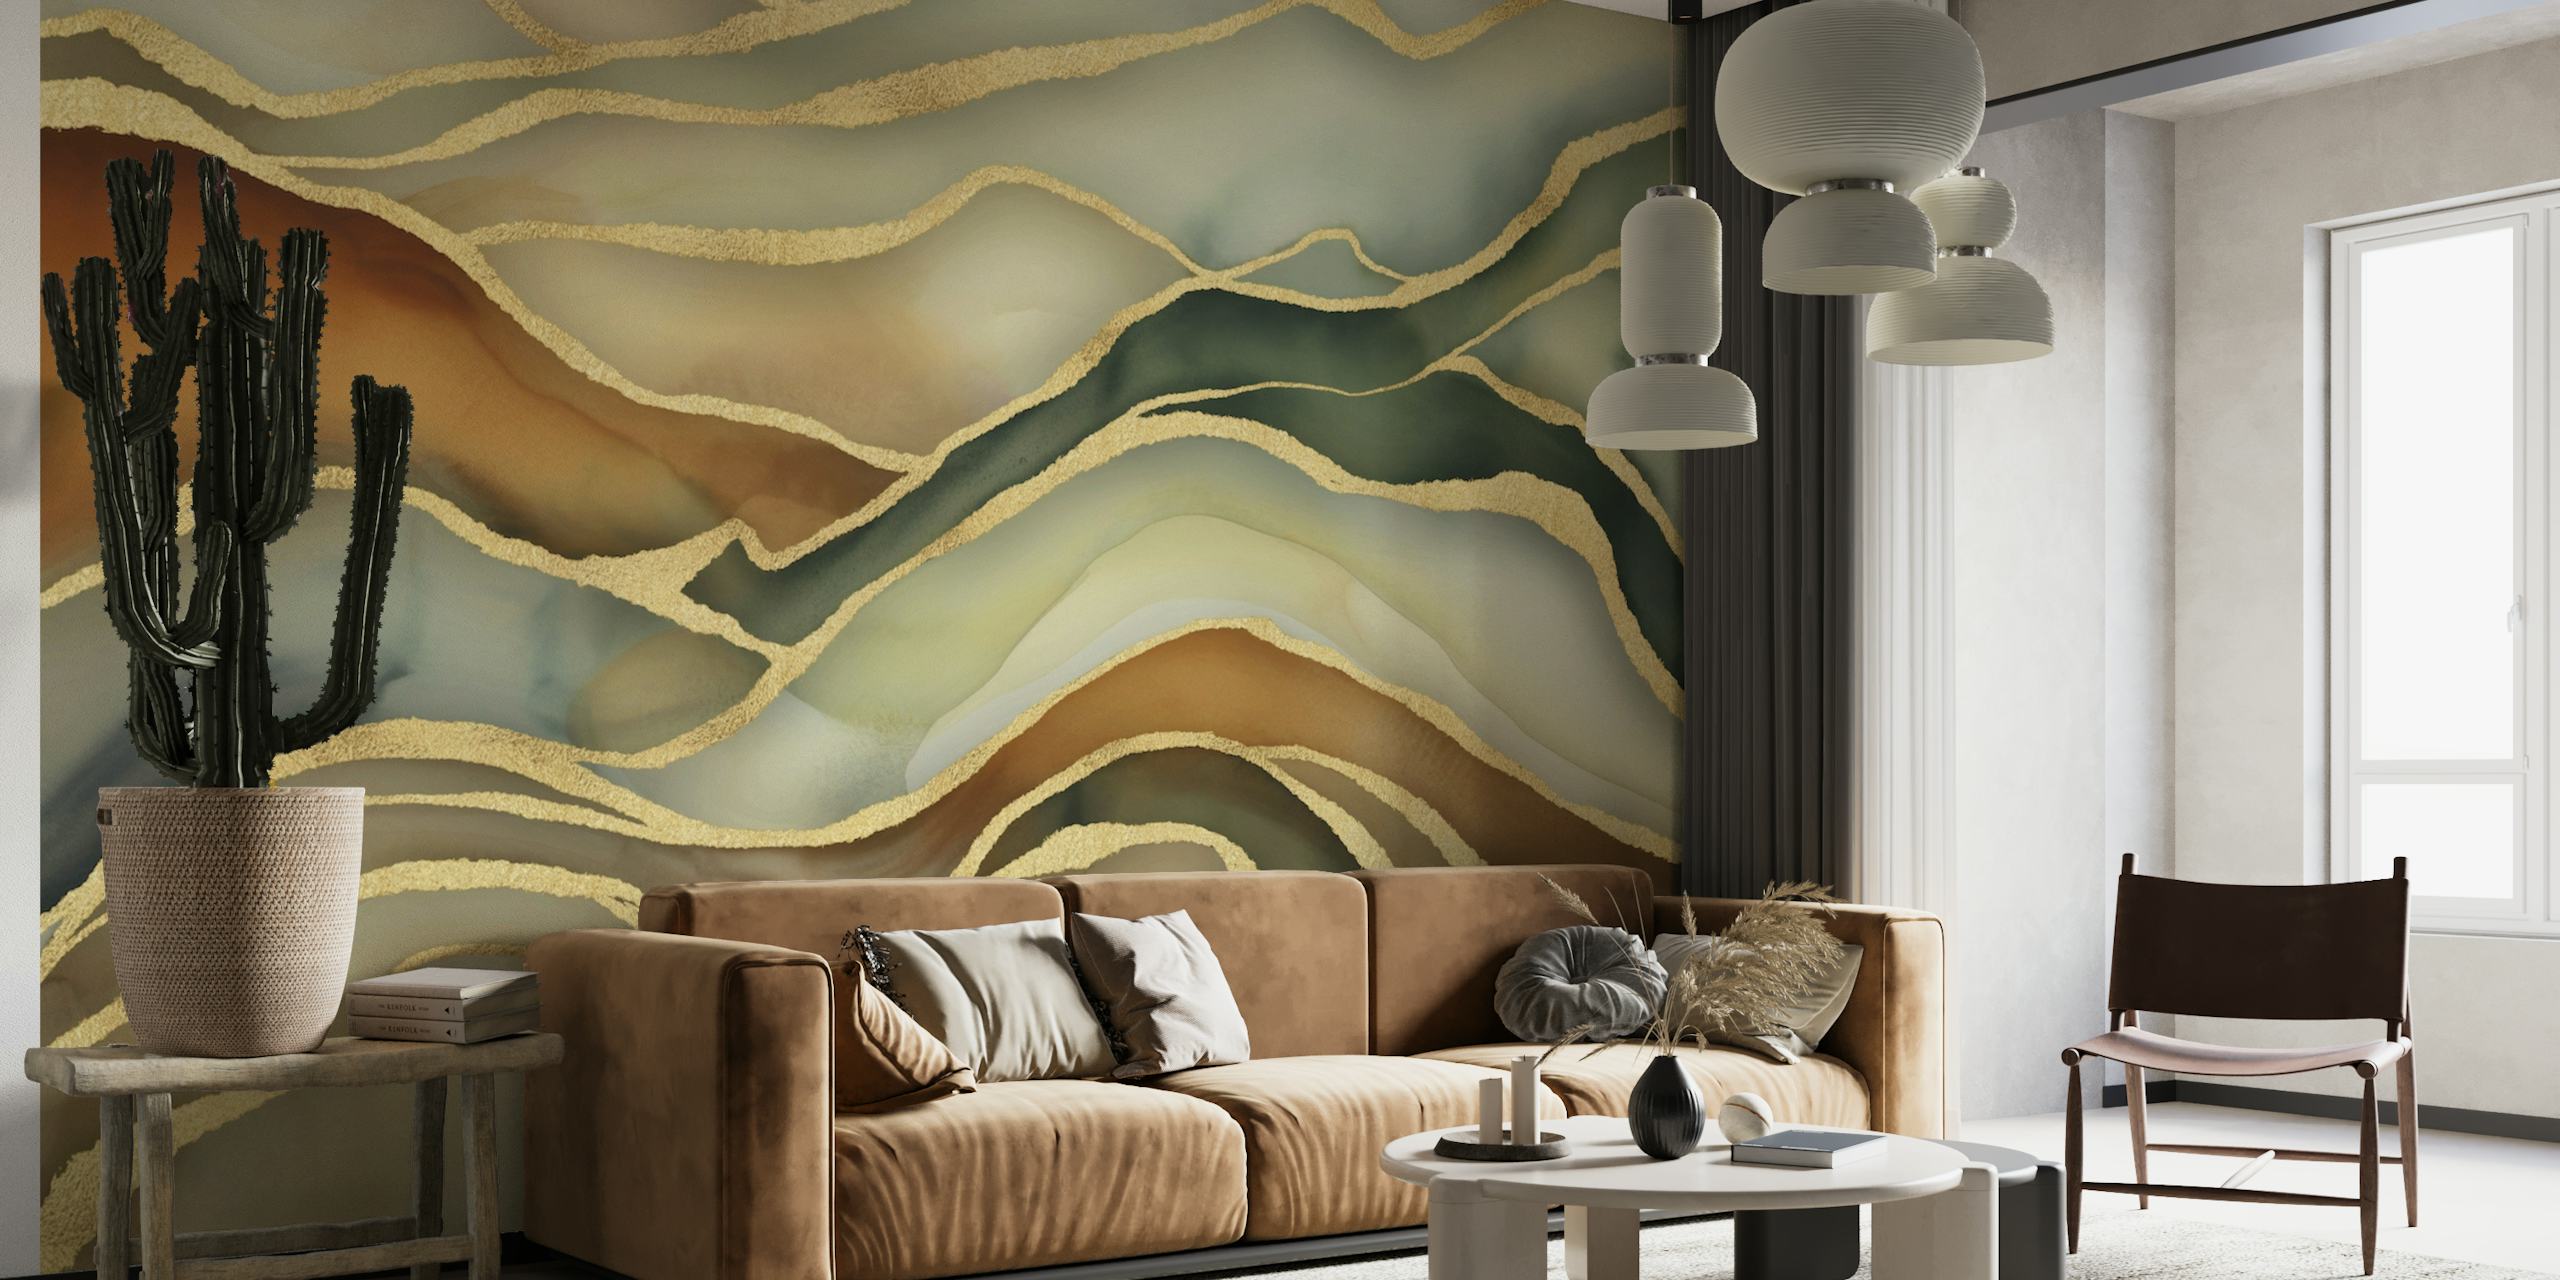 Fotomural vinílico de paisagem de mármore abstrato em tons de marrom, verde e dourado